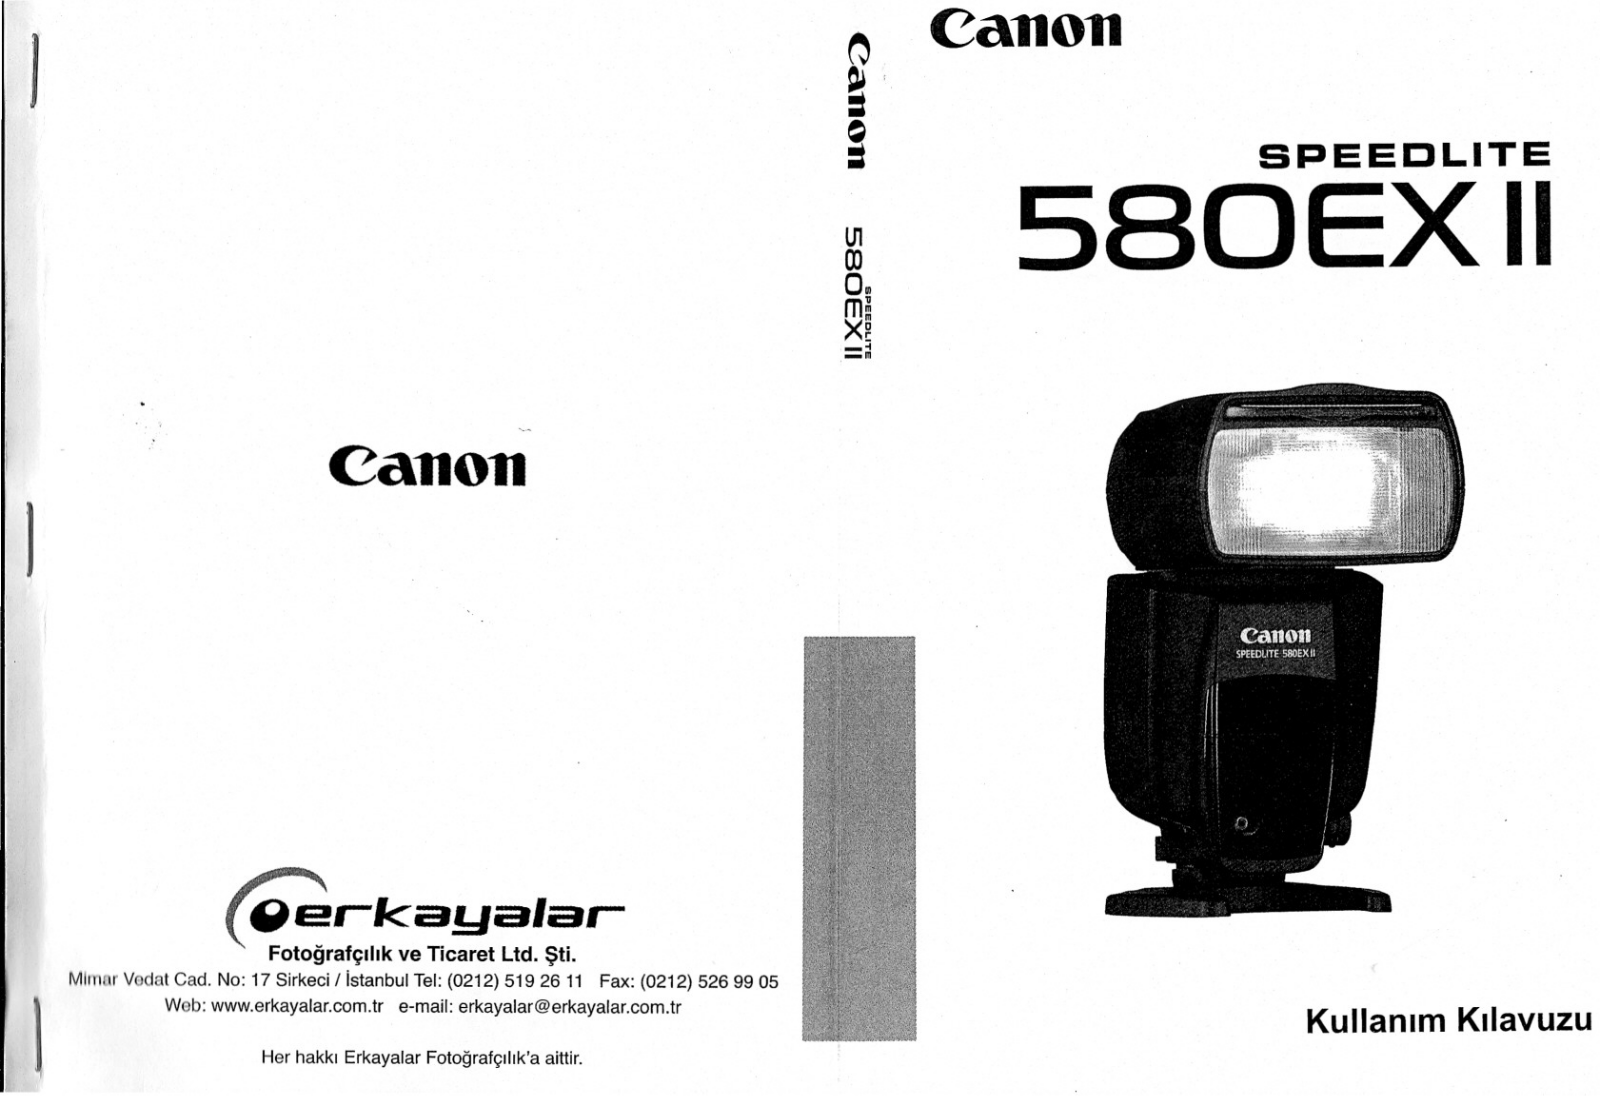 Canon SPEEDLITE 580EX II User Manual